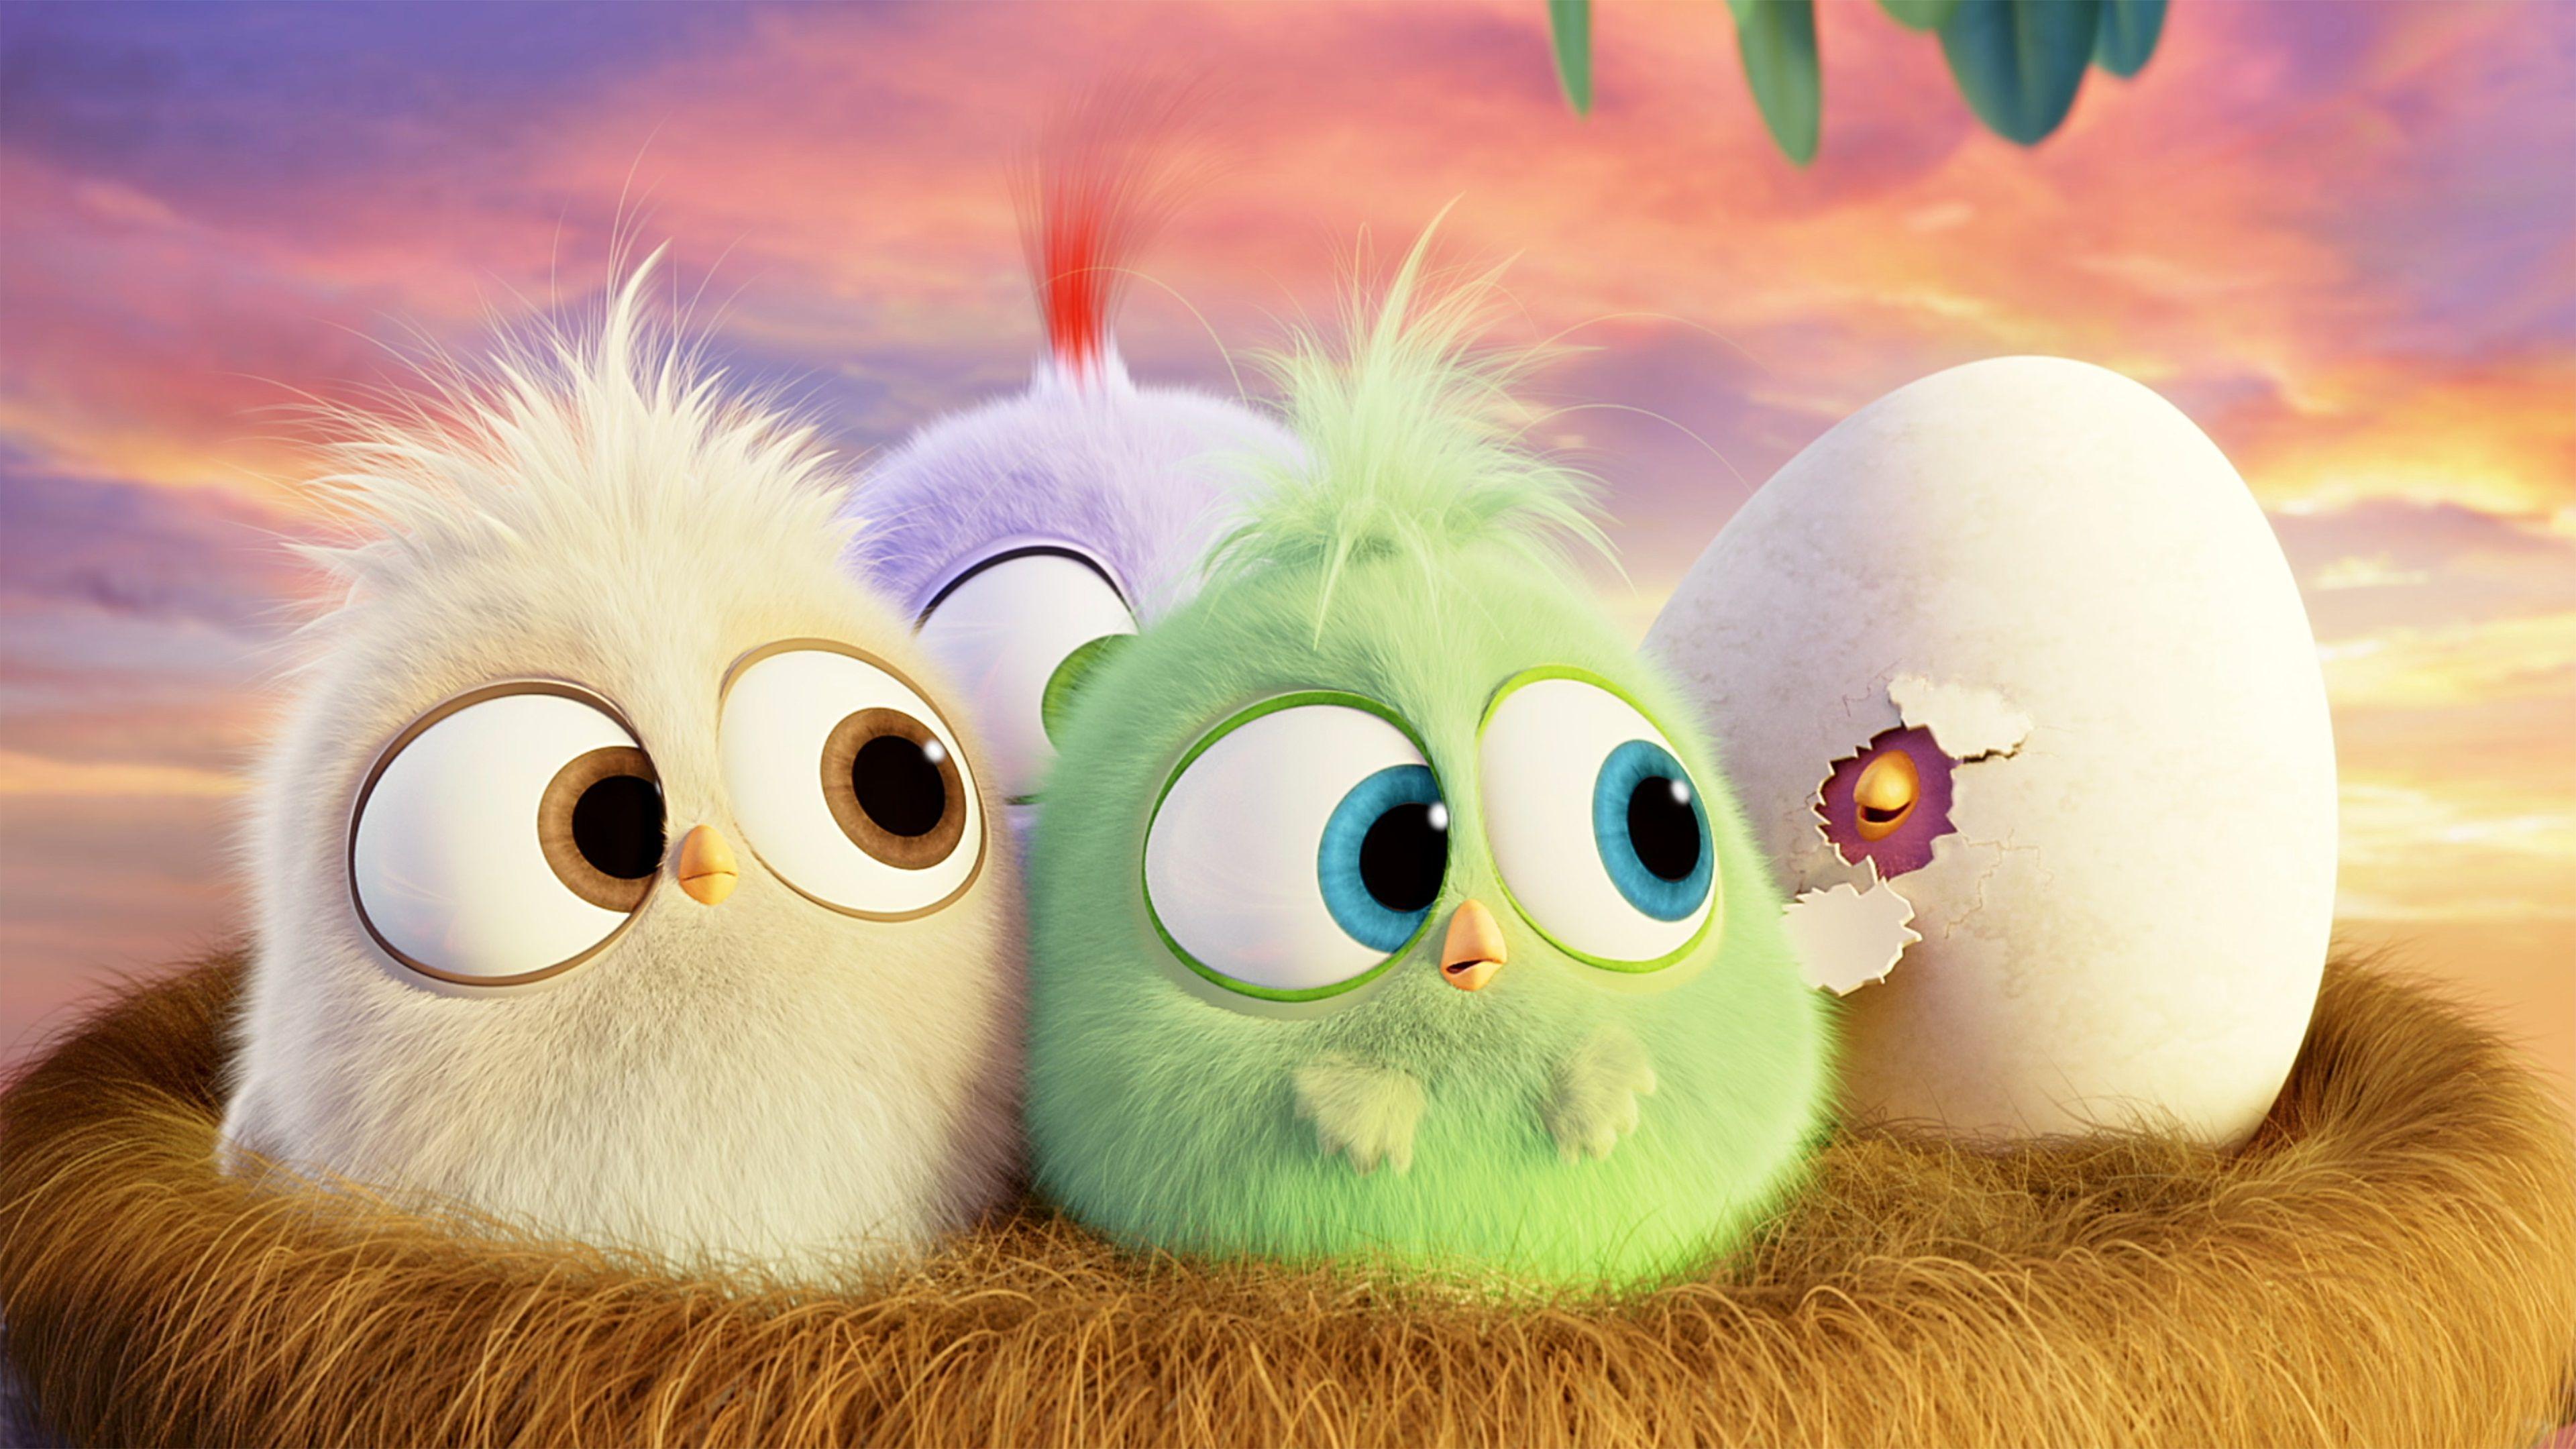 Những chú Chim Angry Birds nổi tiếng đang chờ đón bạn trong bộ sưu tập hình nền HD! Với đồ họa tuyệt đẹp và màu sắc tươi sáng, bạn sẽ cảm nhận được sức mạnh và năng lượng tích cực từ những con chim đầy tinh nghịch này.